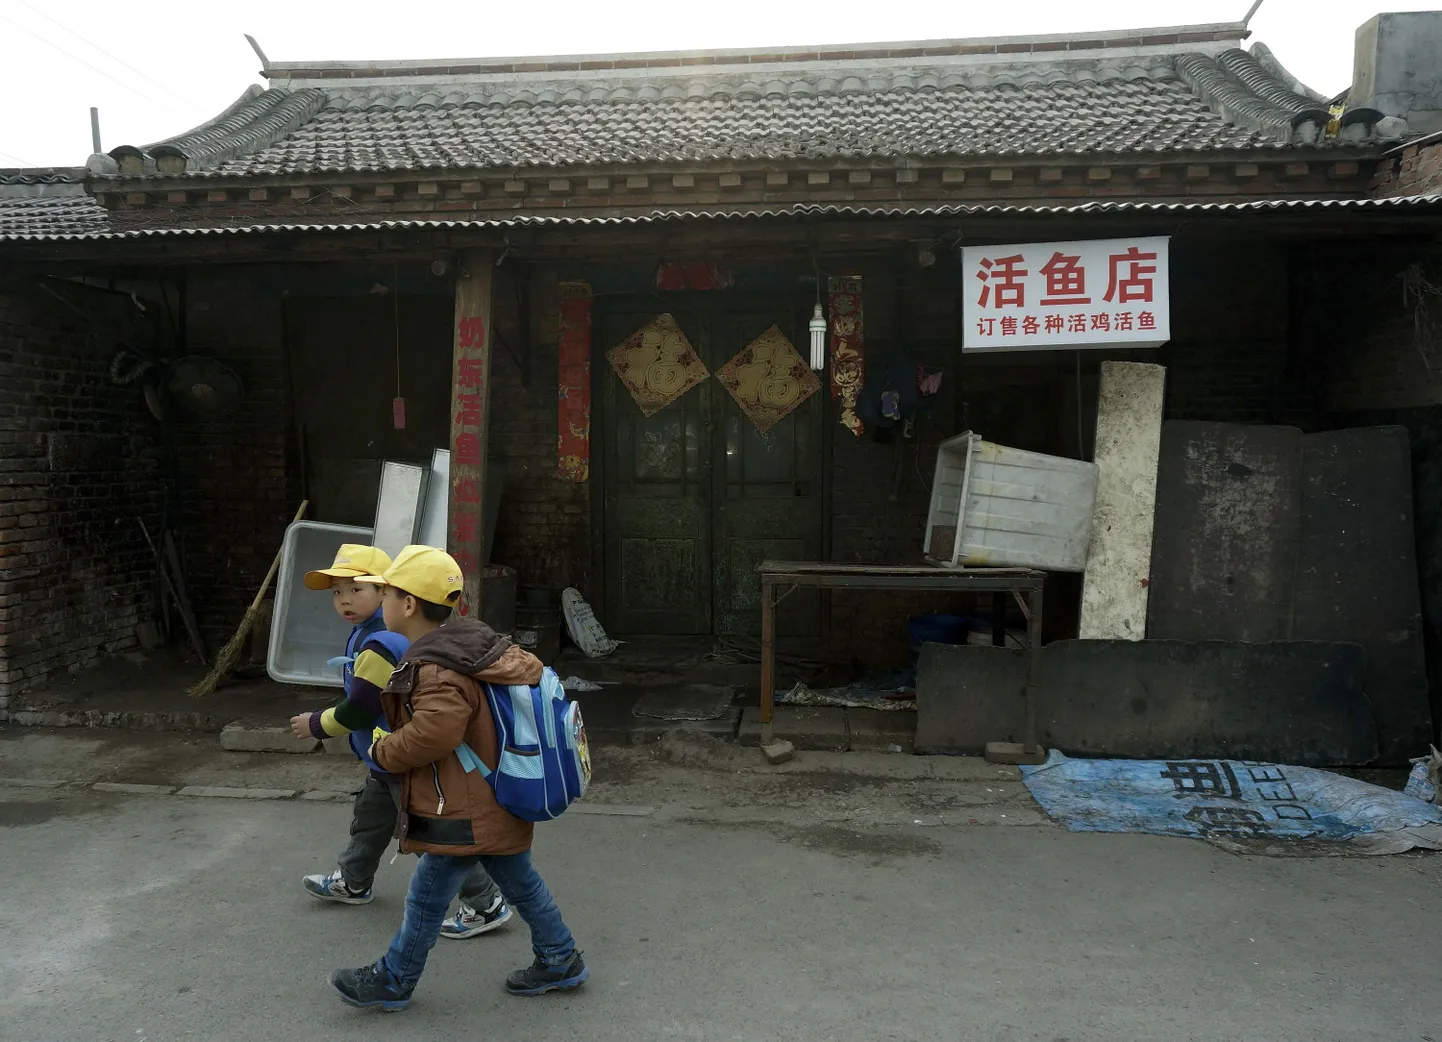 Hiina lapsed ronivad kooli redelitest